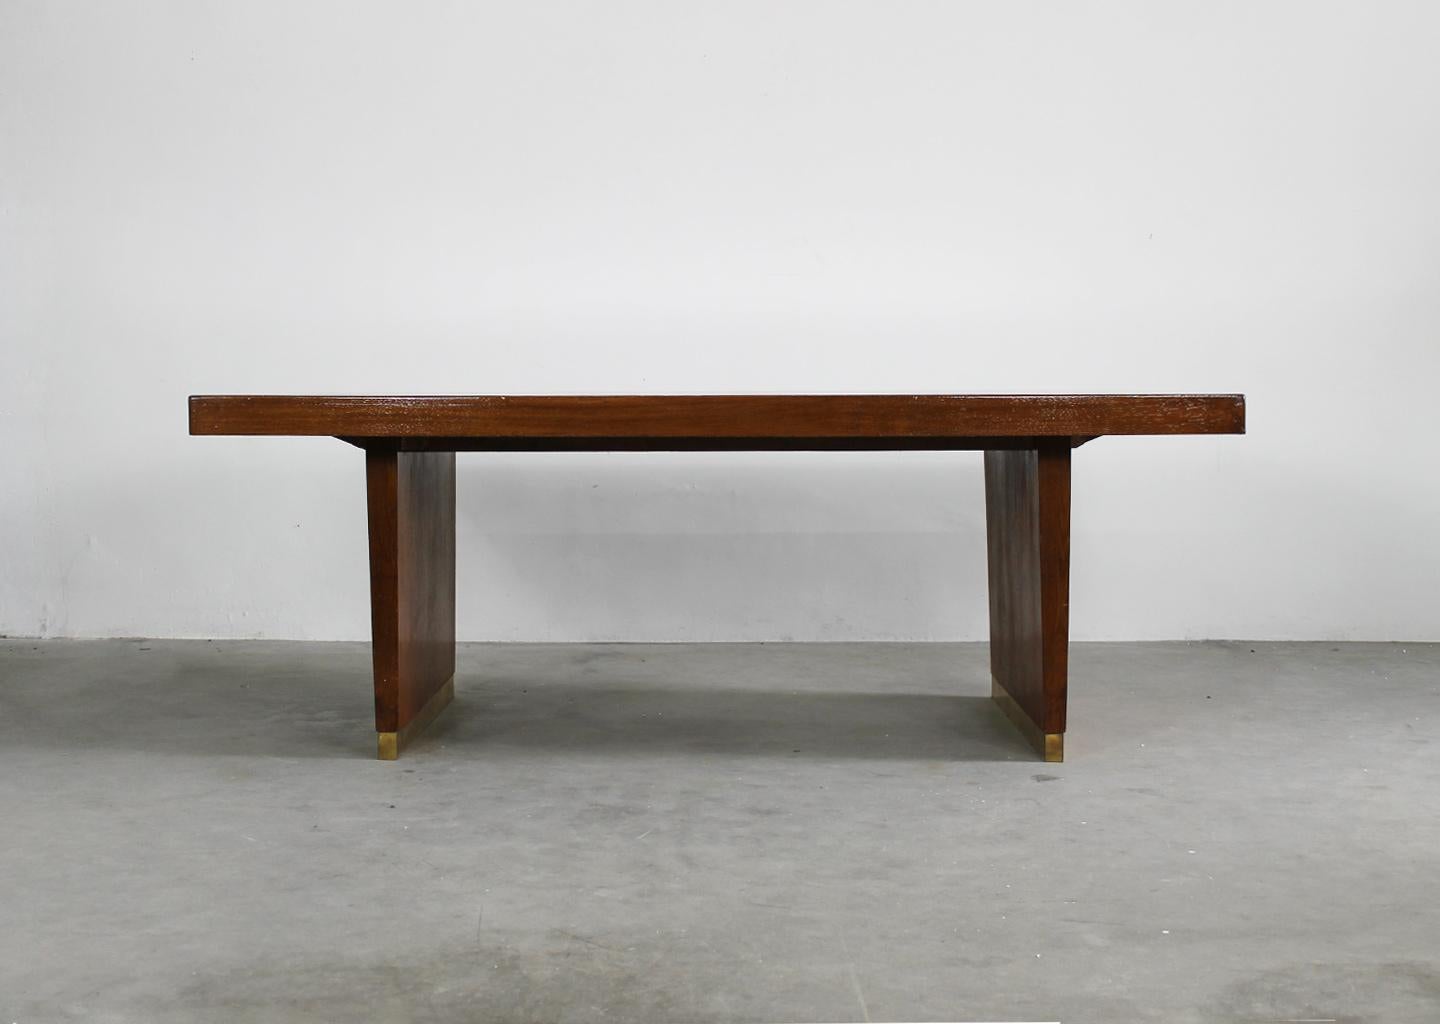 Großer Tisch oder Schreibtisch mit Struktur aus Eichenholz, Tischplatte aus rotem Laminat und Messingdetails. 
Design von Gio Ponti, italienische Manufaktur aus den 1950er Jahren.

Gio Ponti war eine Ikone der Moderne: Der italienische Designer,